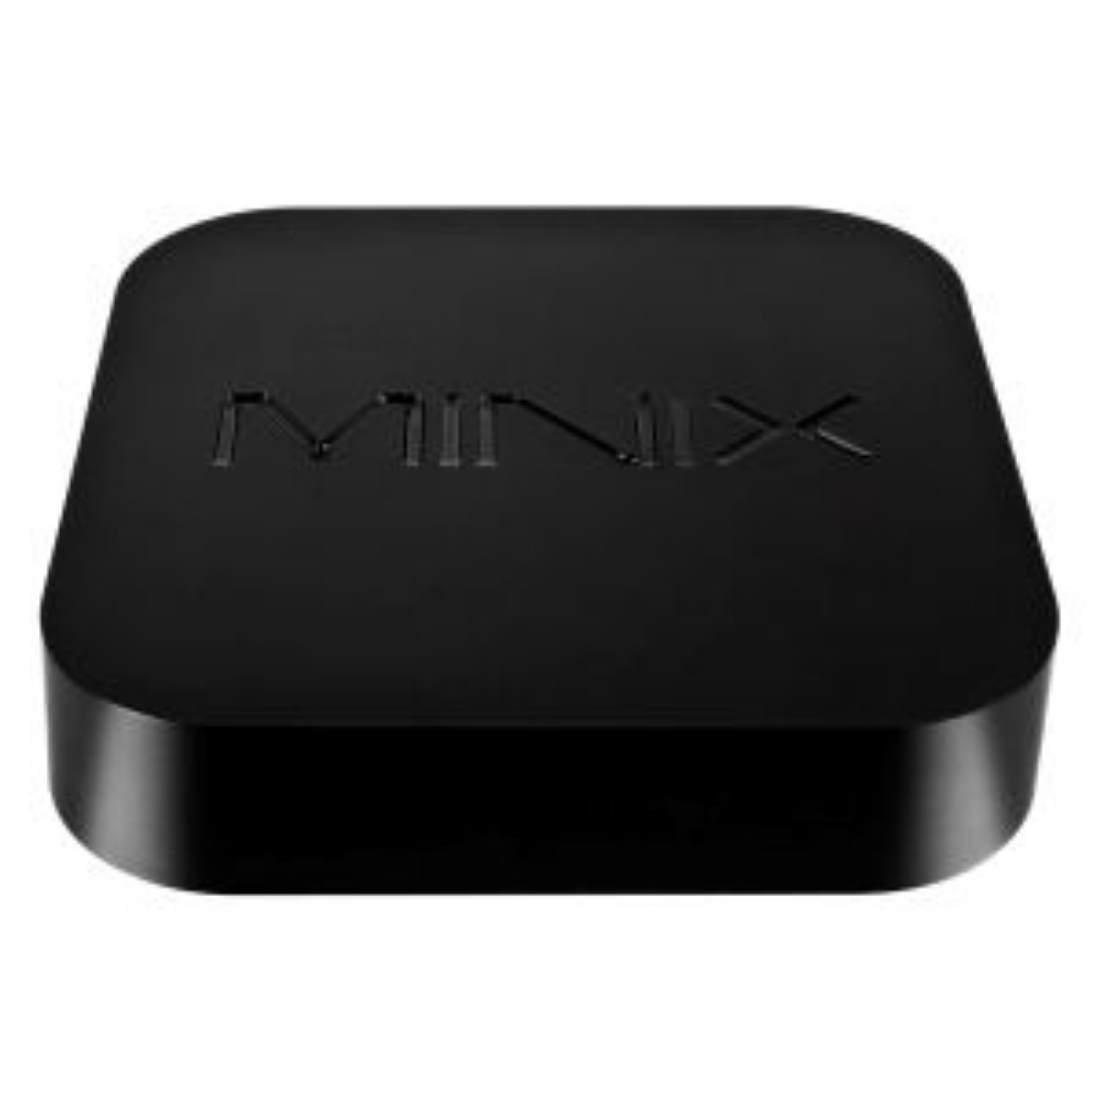 Picture of X7 mini